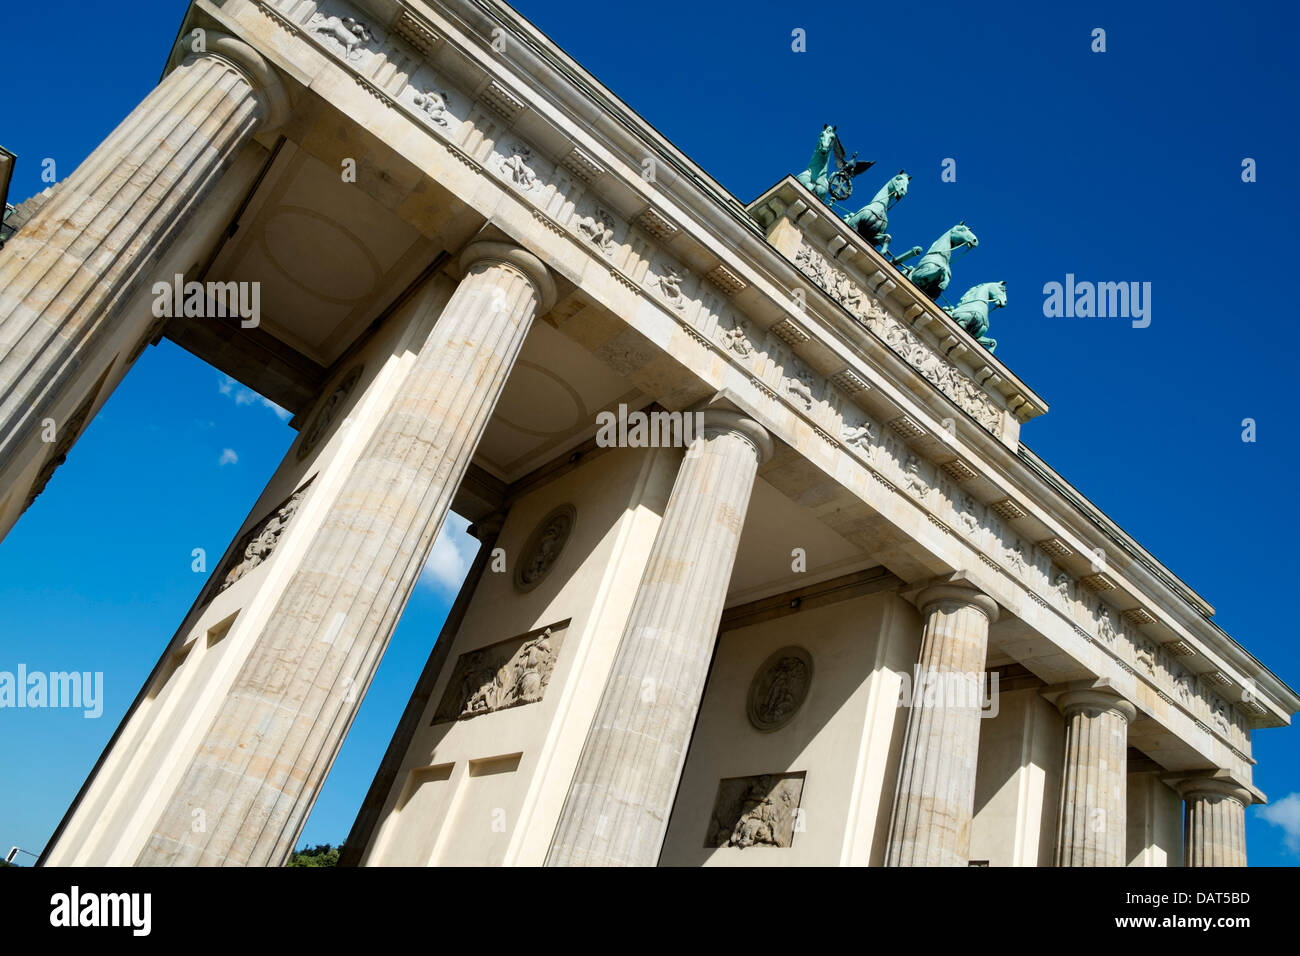 Brandenburg Gate in Berlin Germany Stock Photo